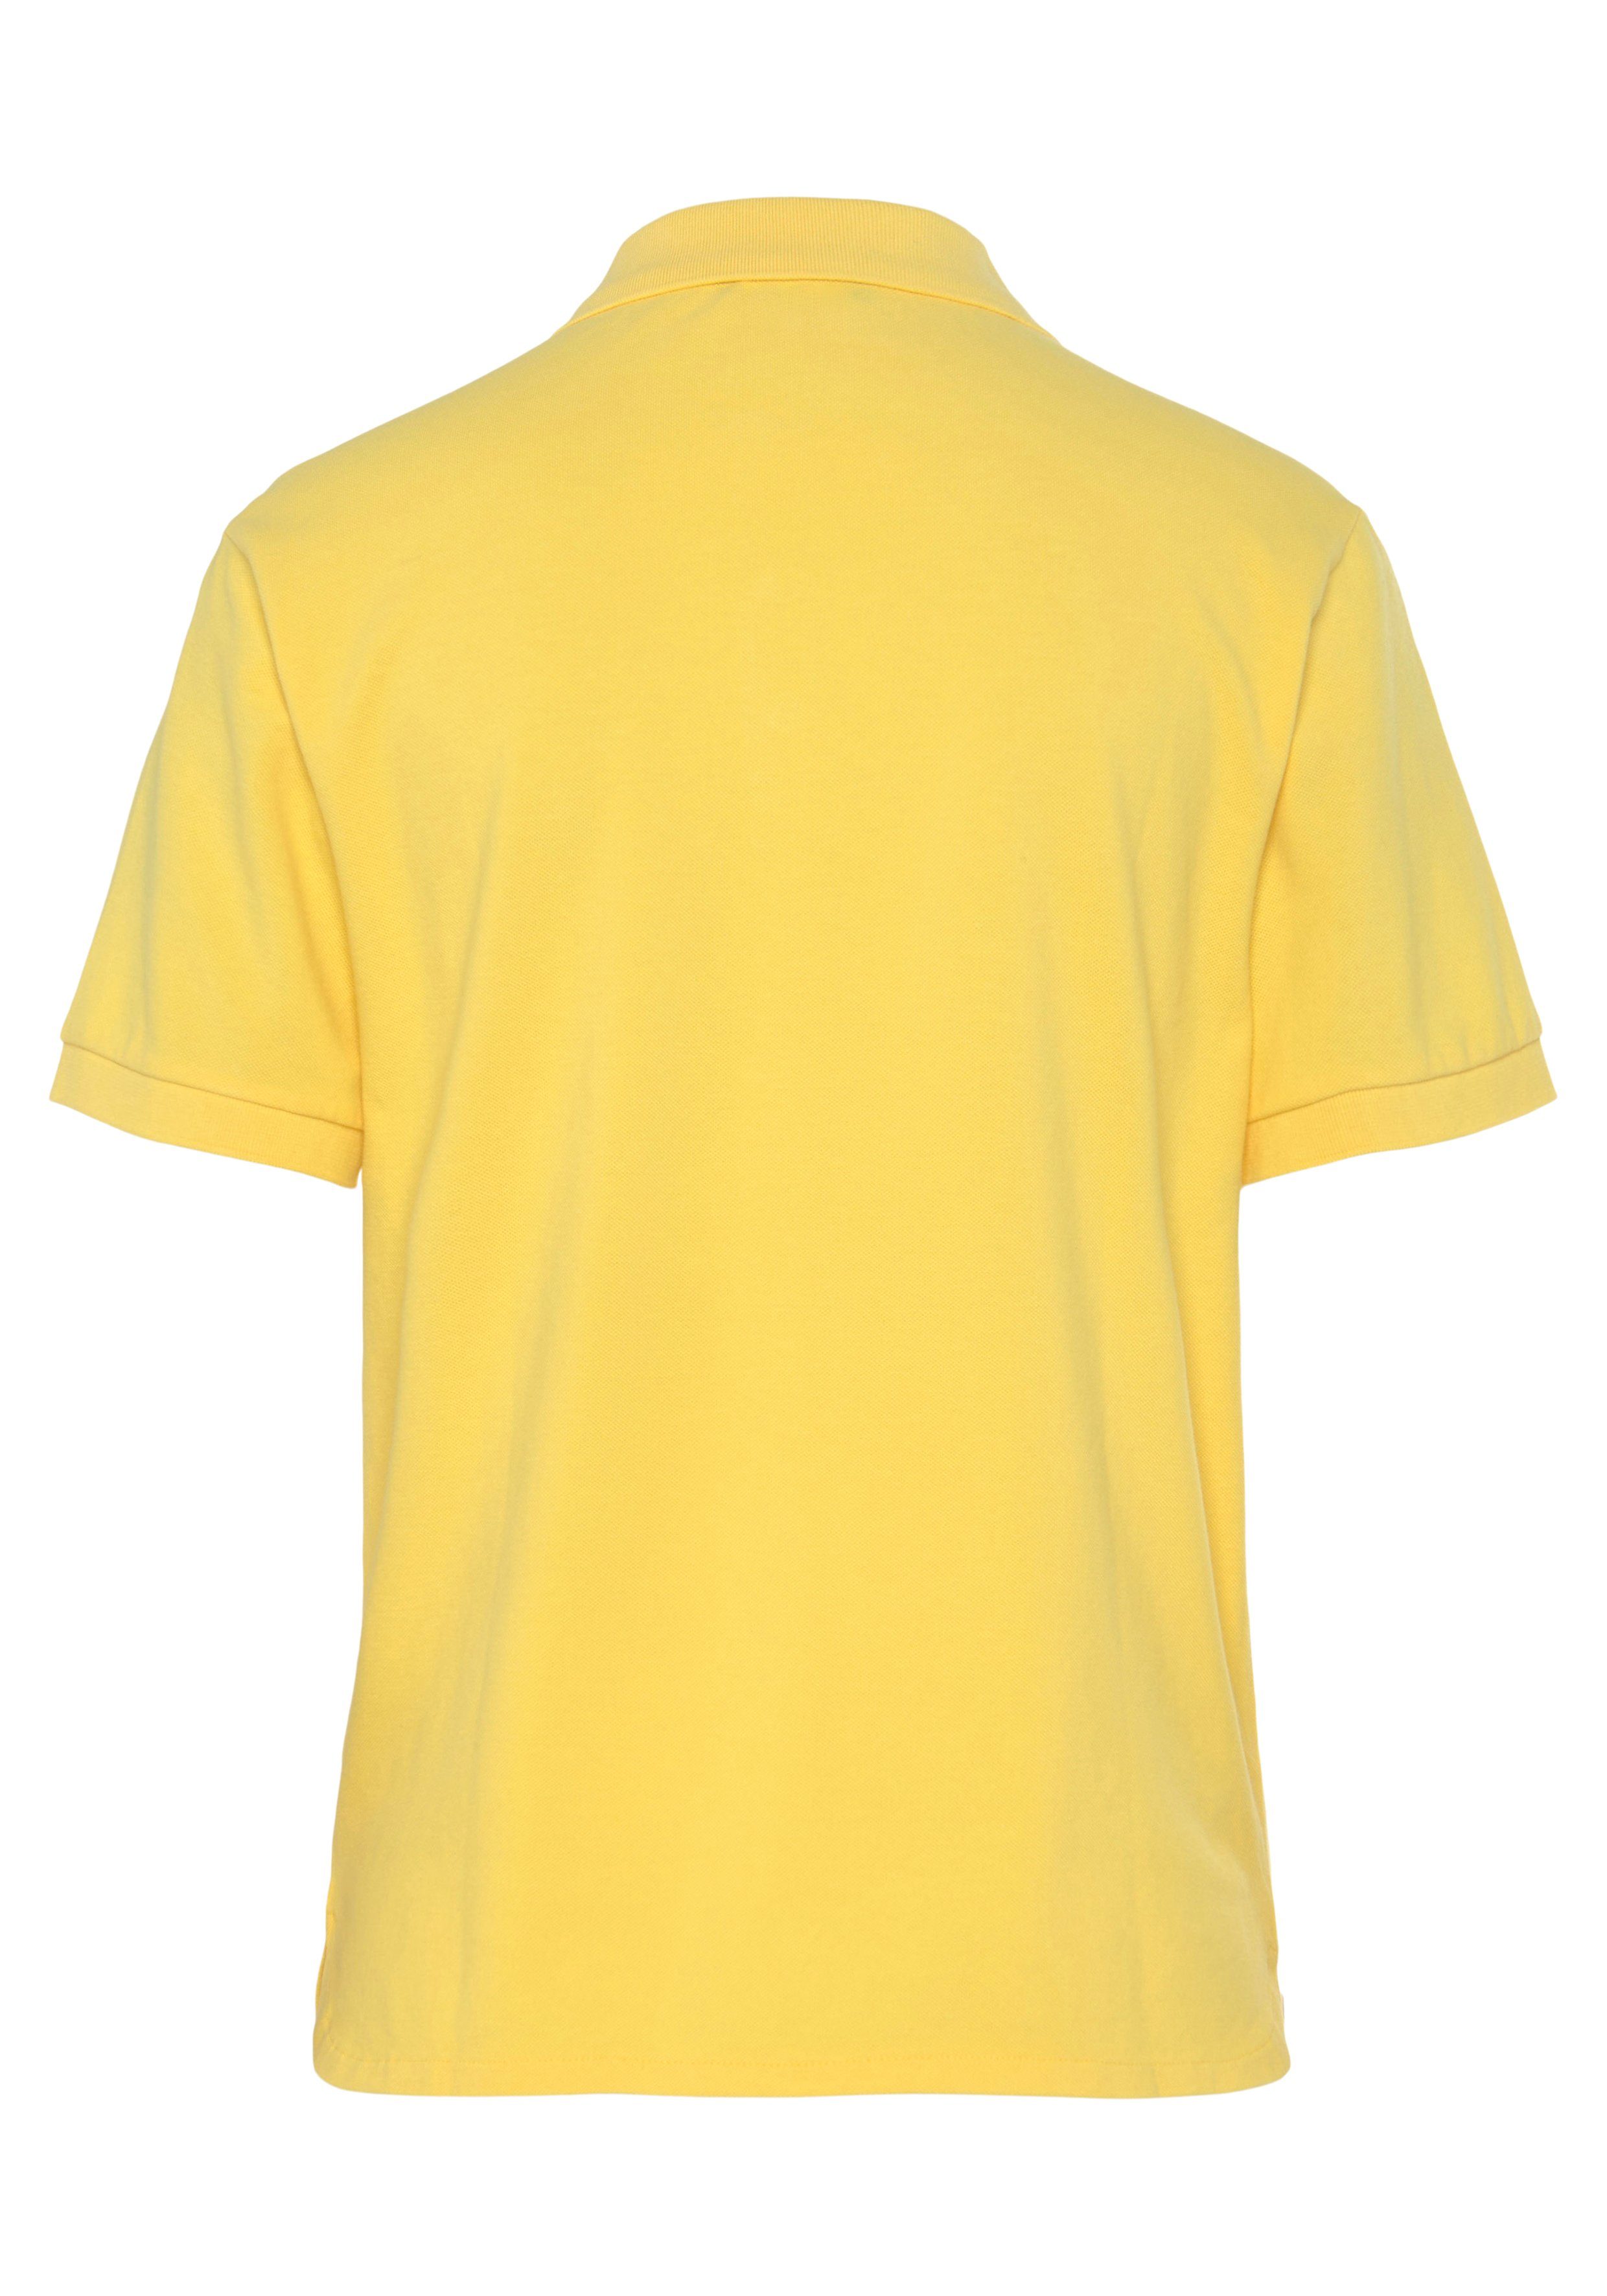 Poloshirt Benetton Colors mit Knöpfen gelb of perlmuttfarbenen United